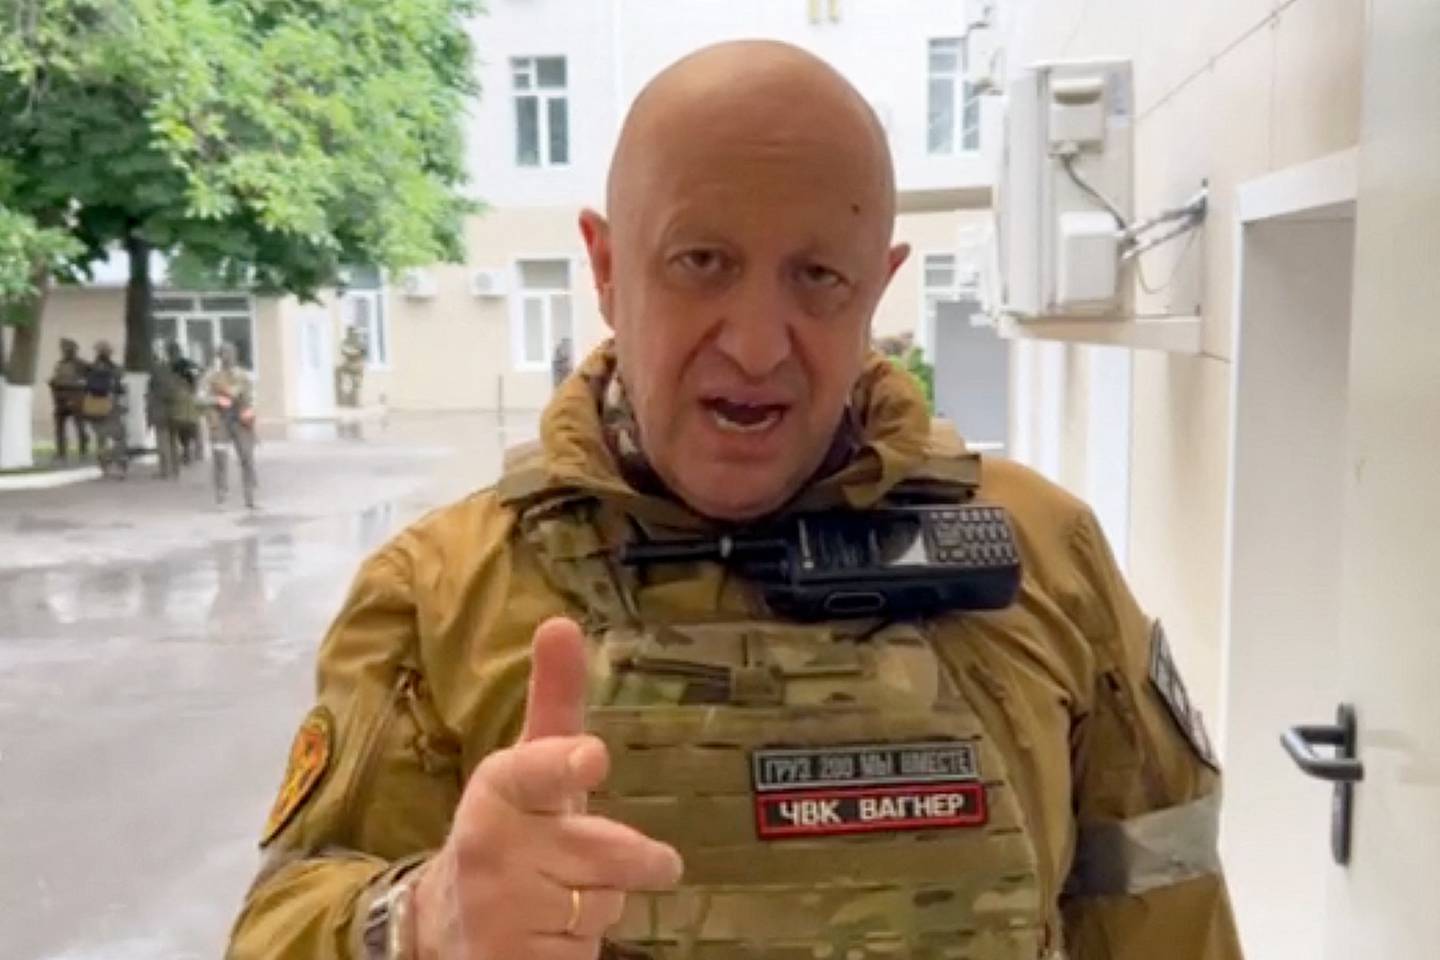 Questa è una schermata scattata sabato 24 giugno di Yevgeny Prigozhin al quartier generale militare di Rostov sul Don.